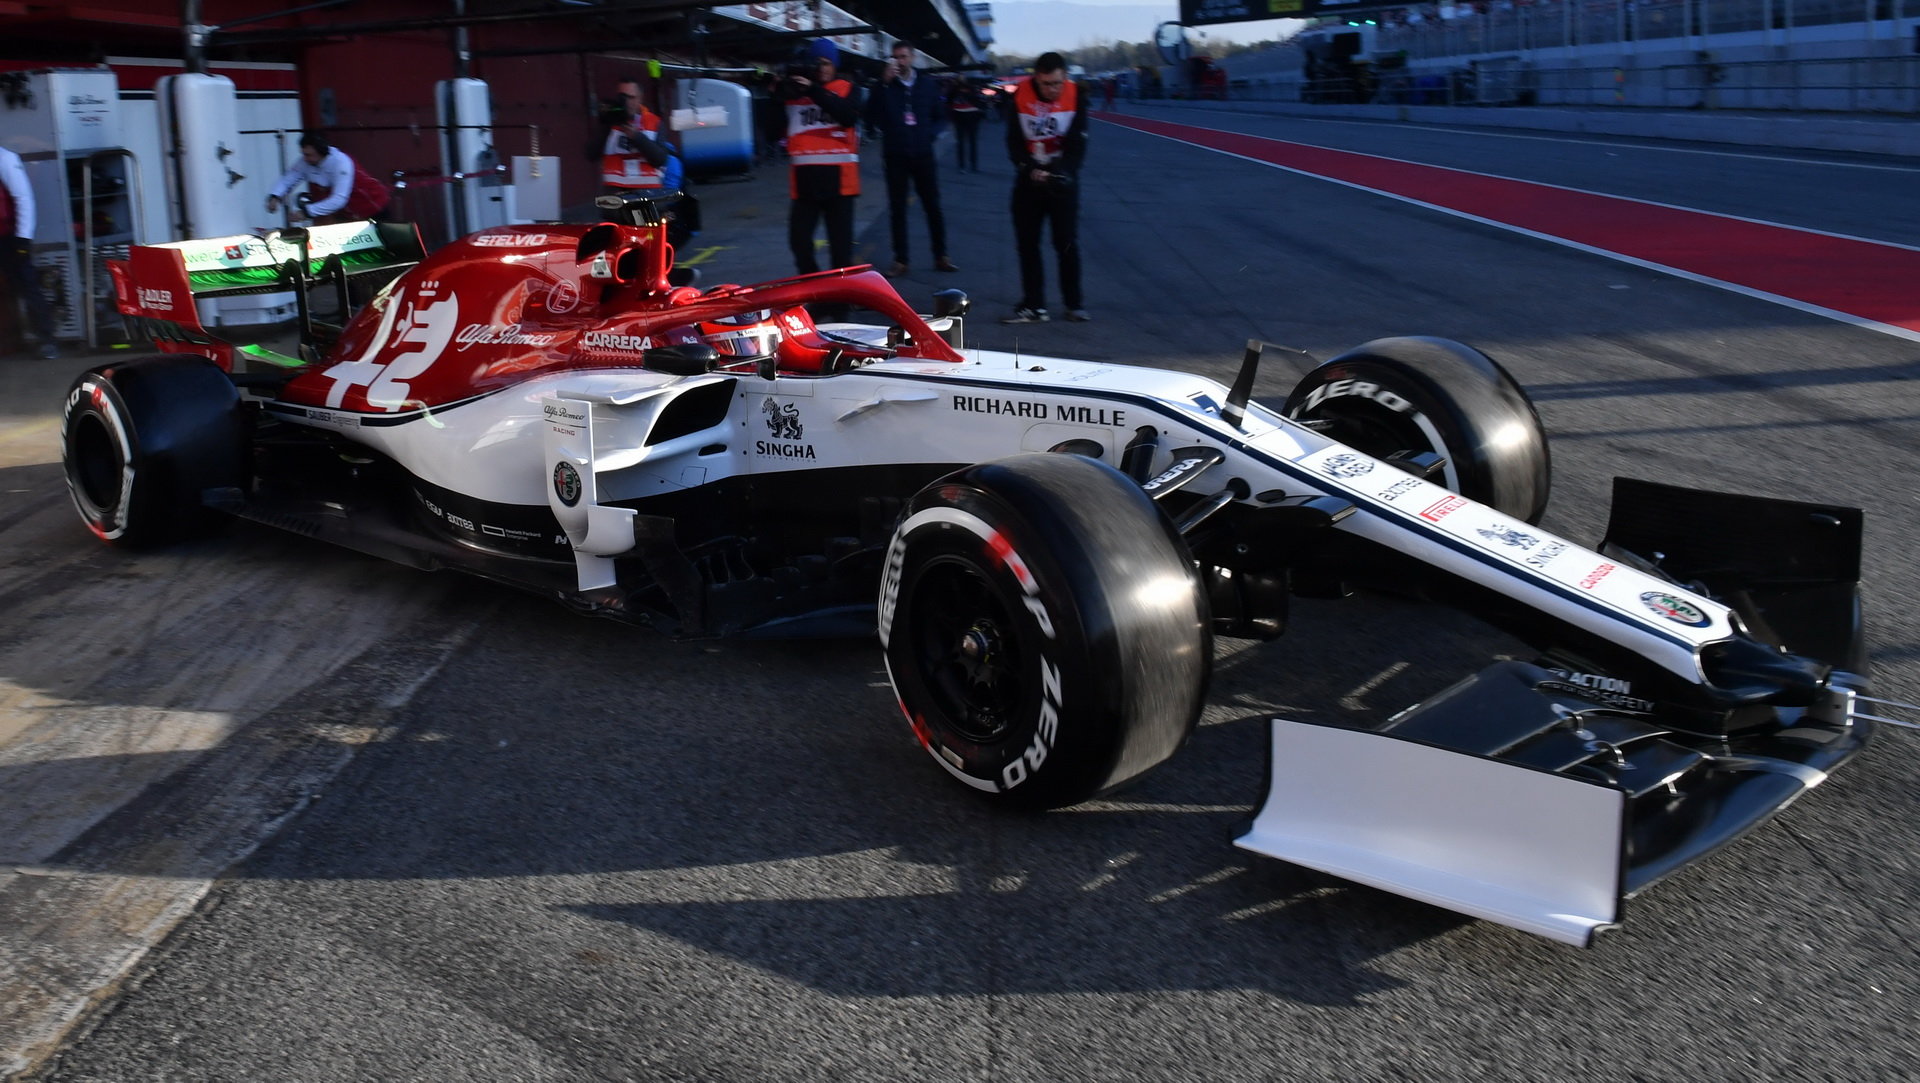 Kimi Räikkönen v novém voze Alfa Romeo C38 při testech v Barceloně